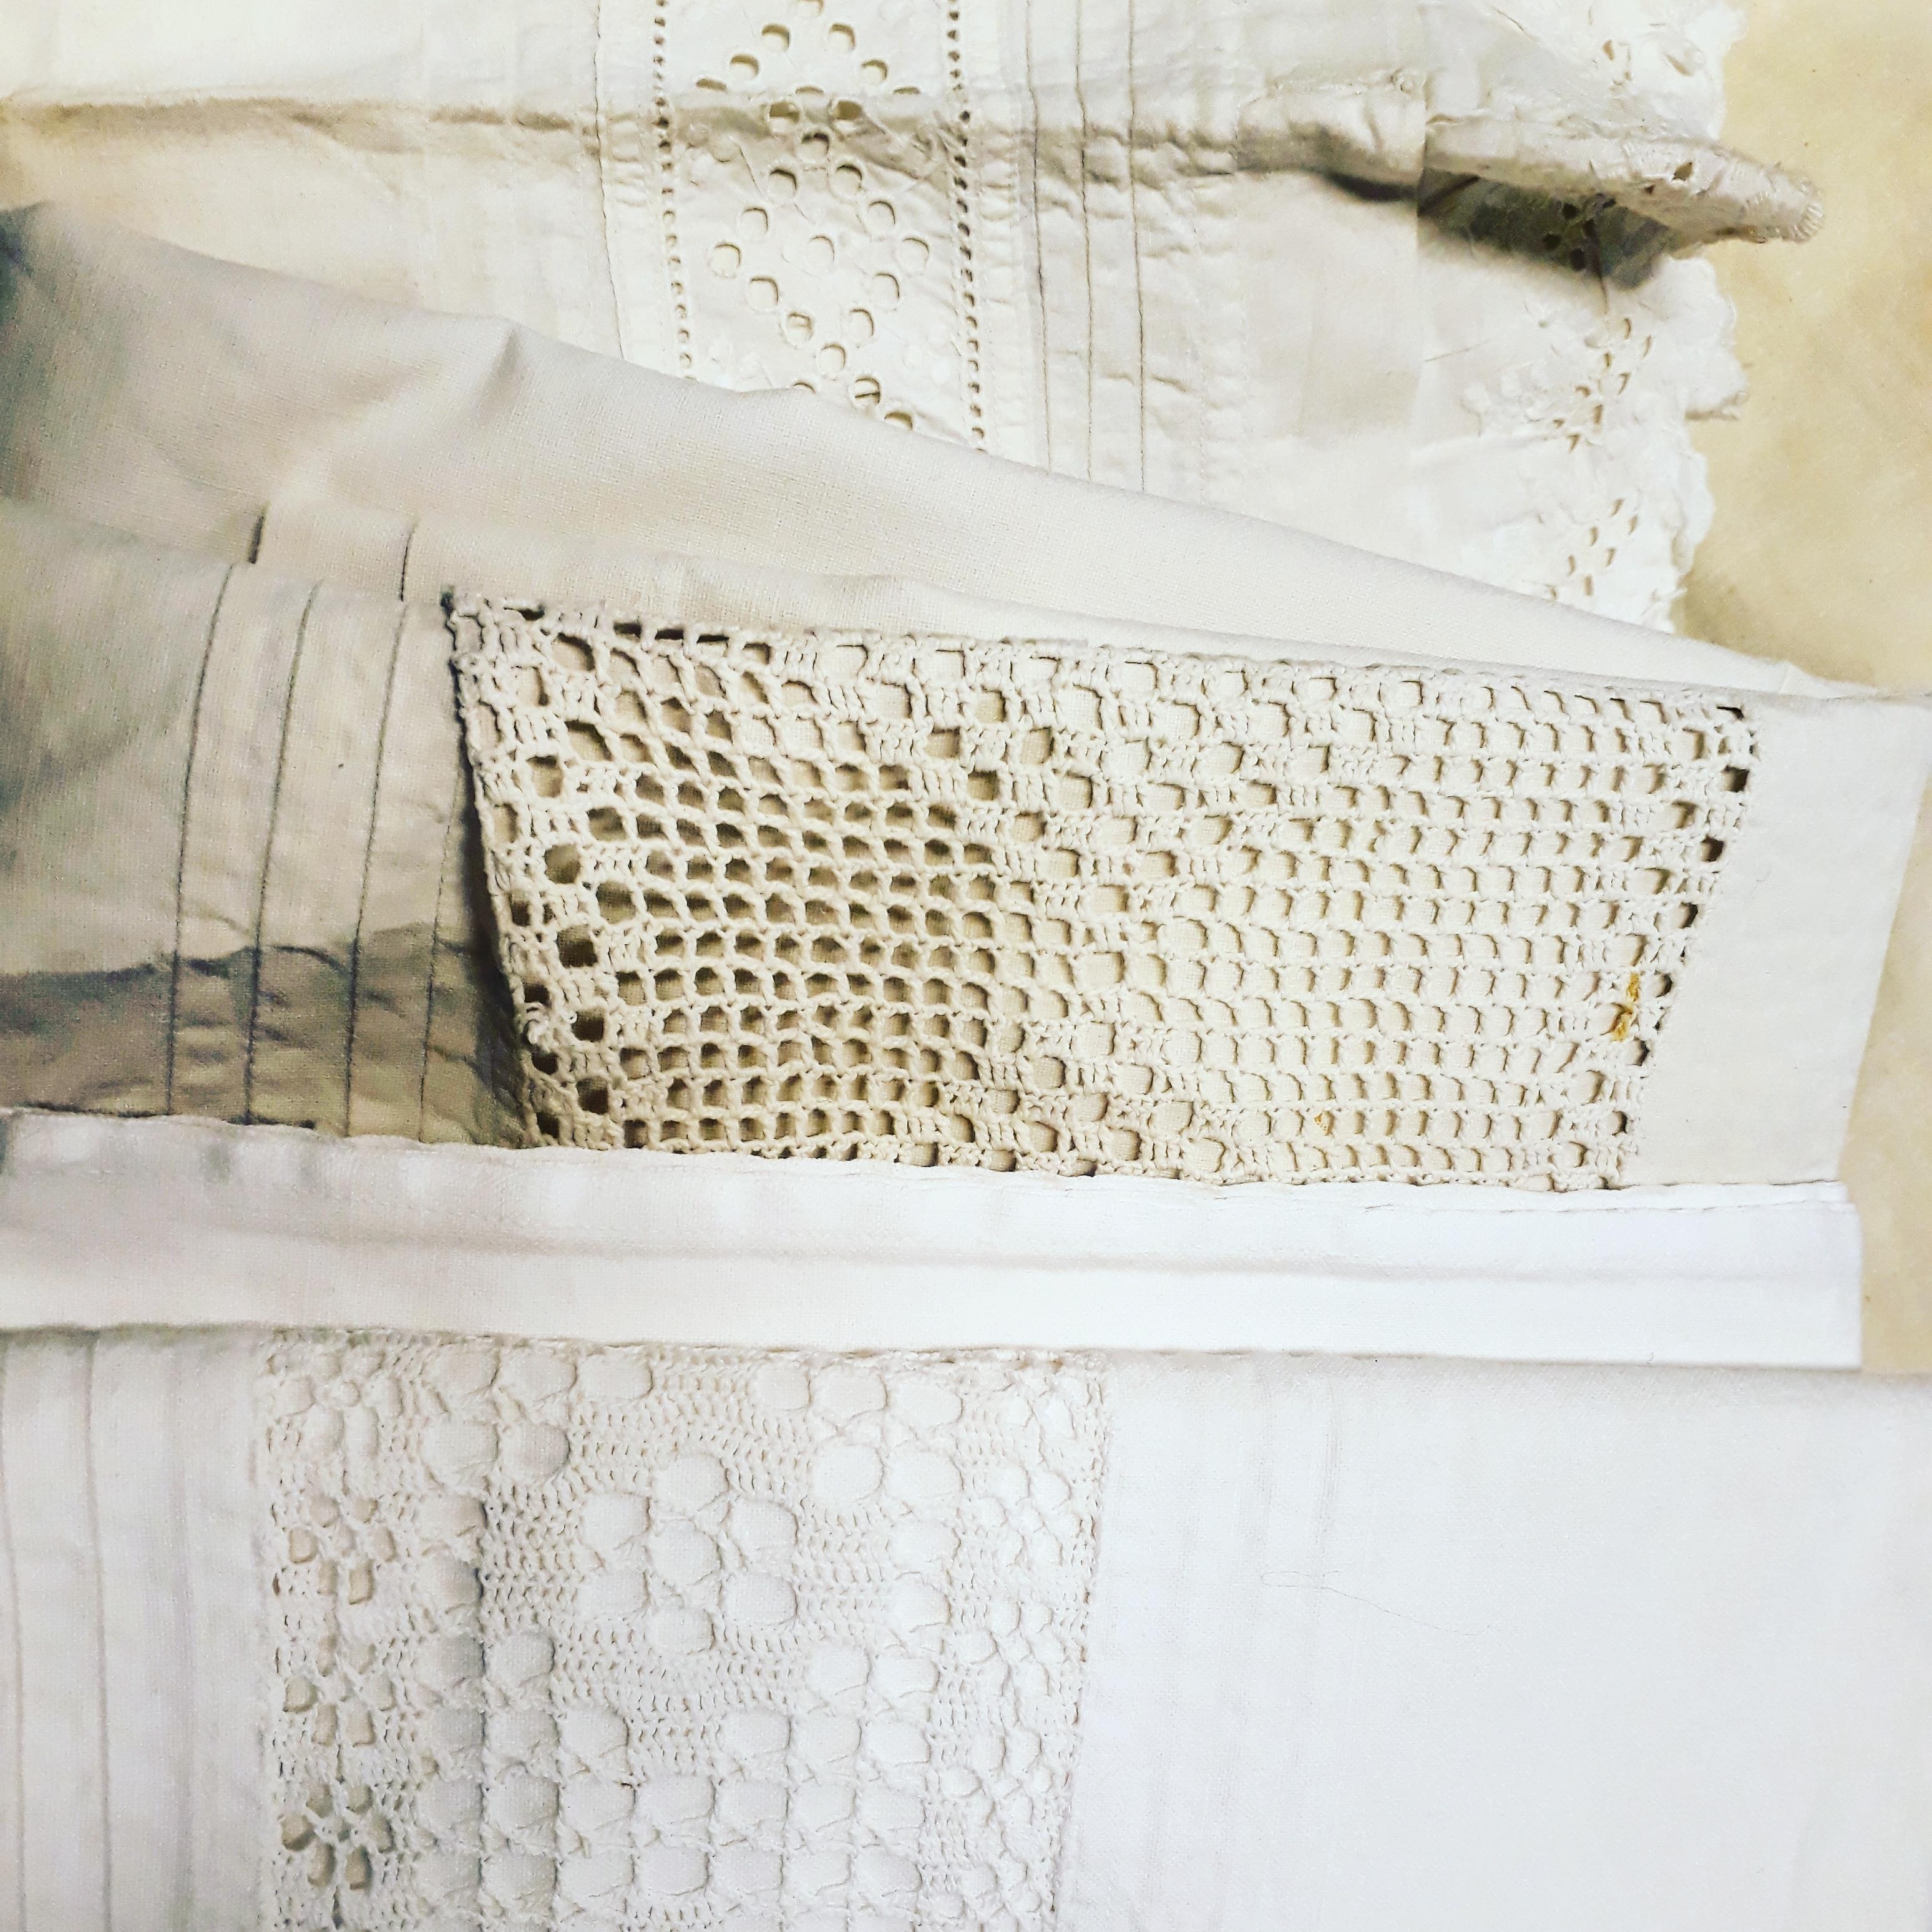 Flohmarktglück! 
Alte, wunderschön handgearbeitete Kissenbezüge aus Baumwolle und Leinen ♡
#flohmarkt #schlafzimmer 